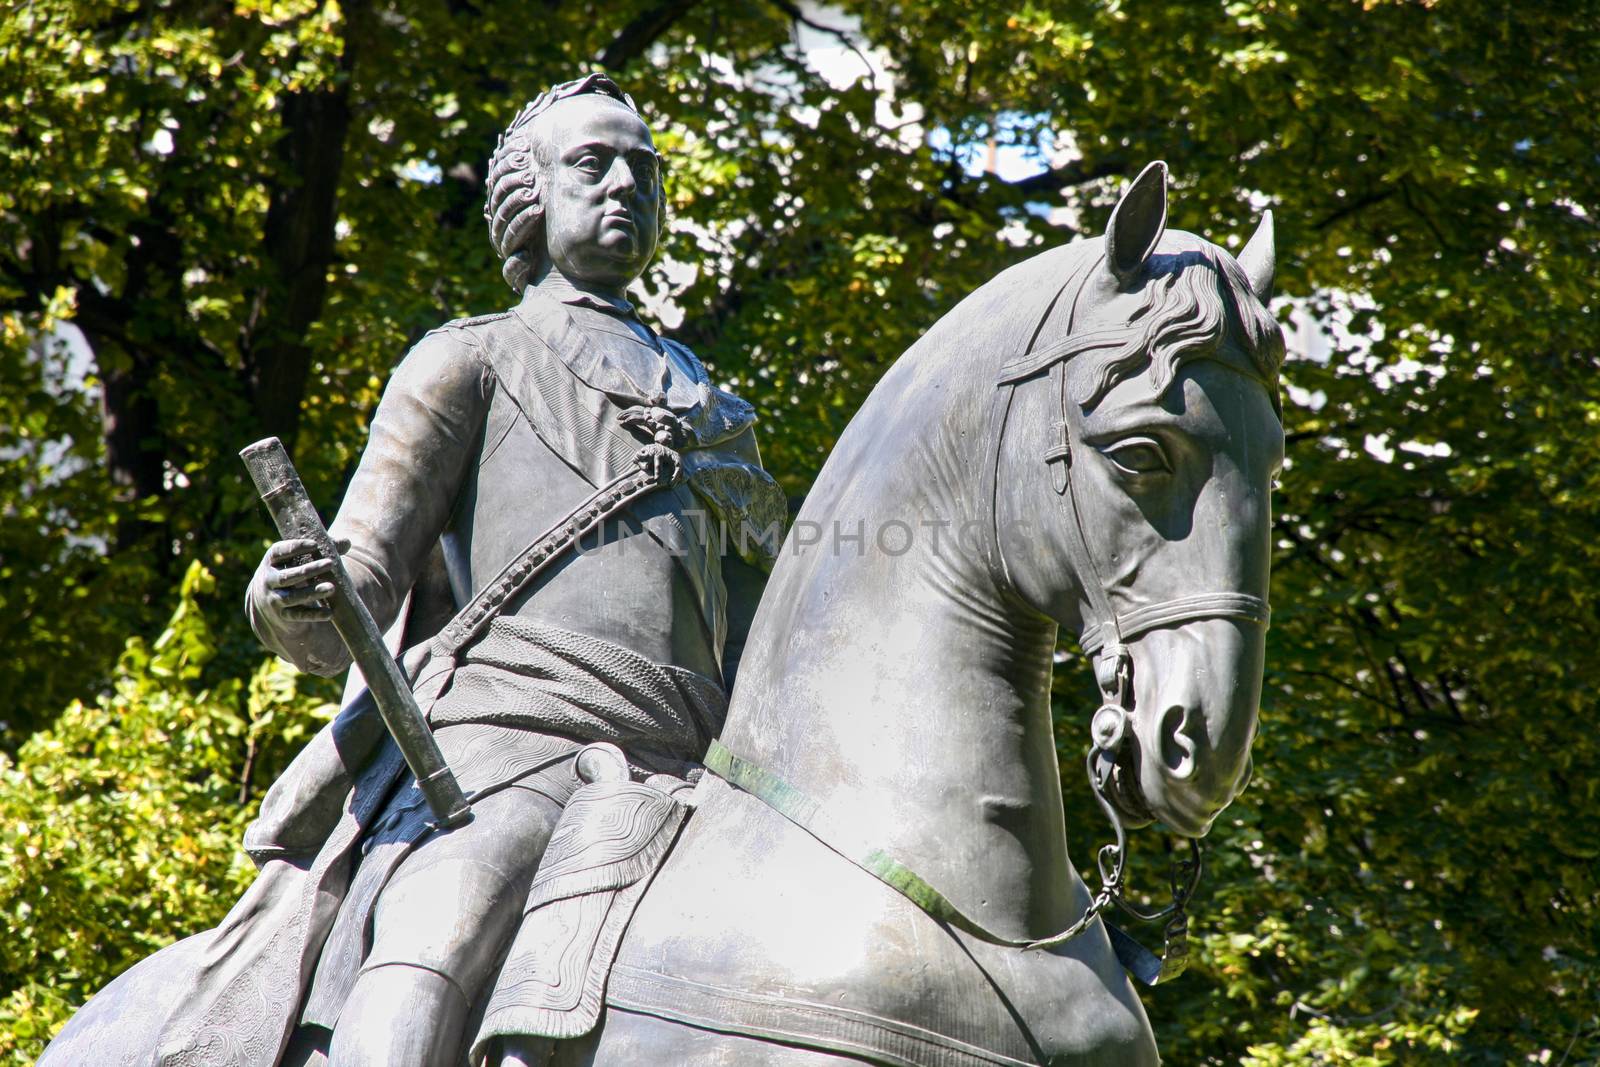 Statue of Kaiser Franz I. Stephan von Lothringen in Vienna, Aust by vladacanon